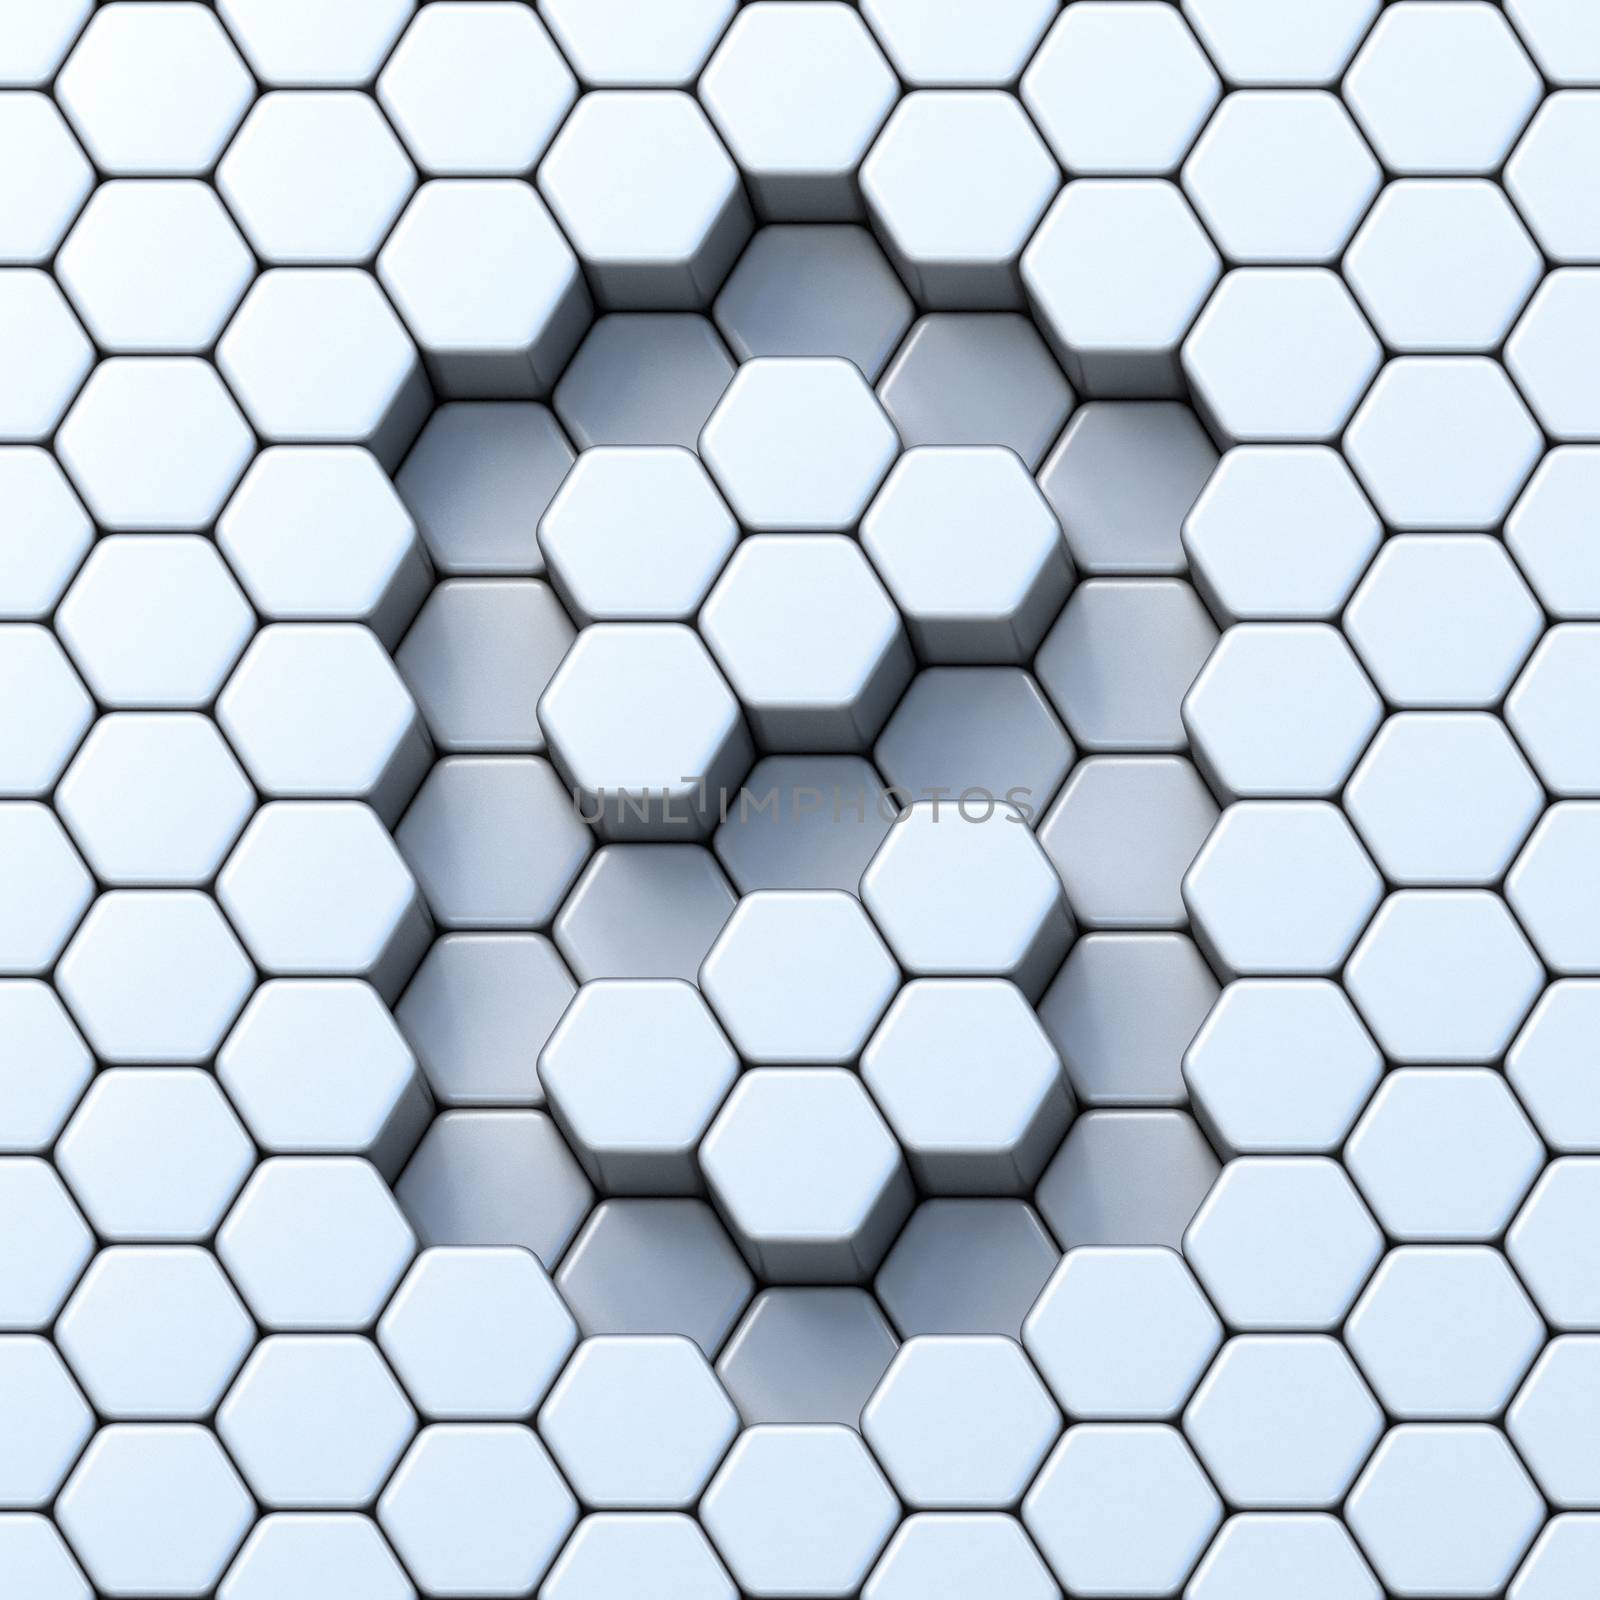 Hexagonal grid number ZERO 0 3D by djmilic